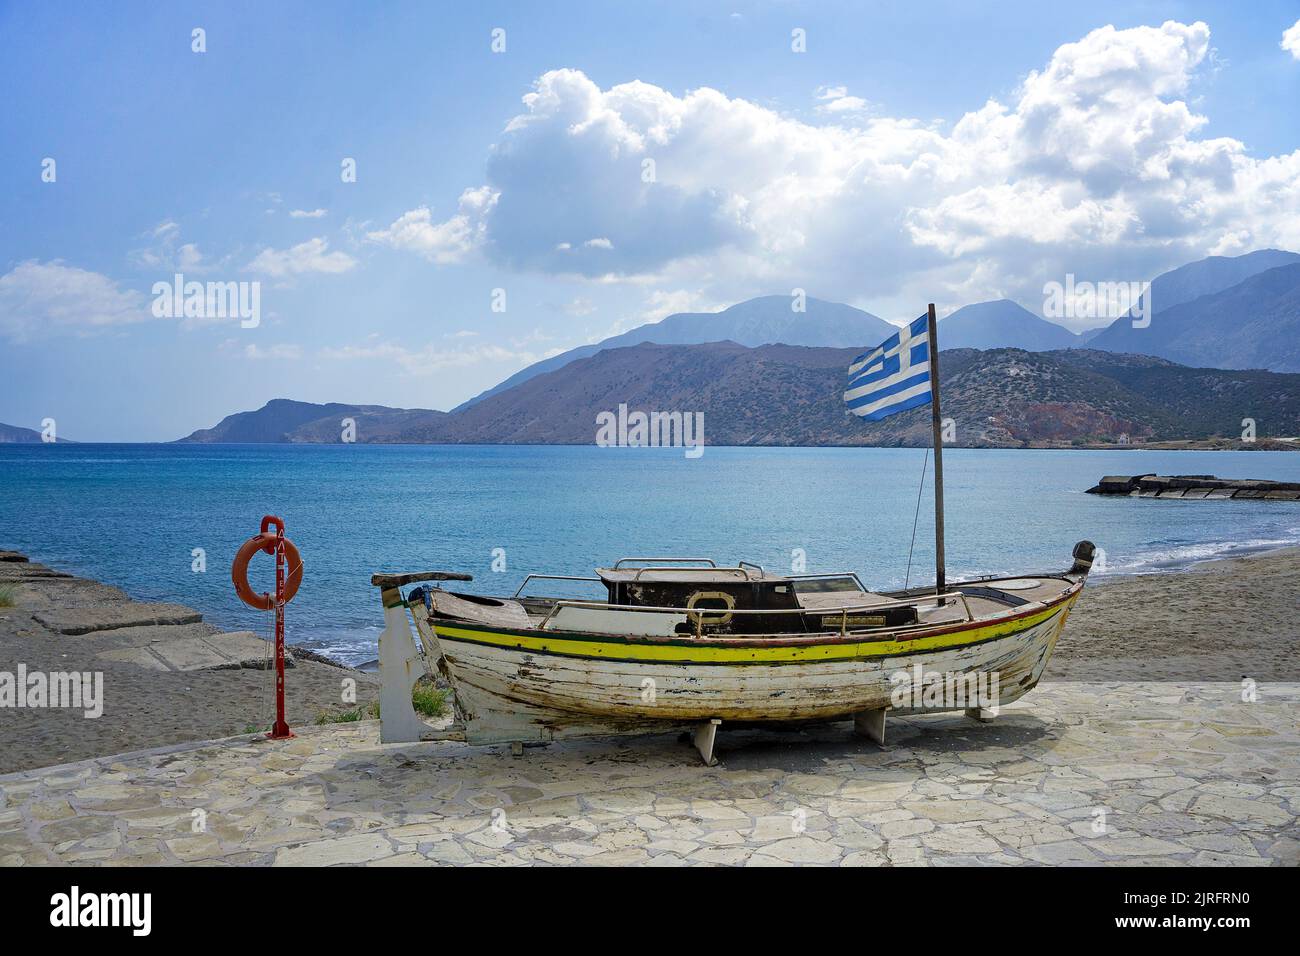 Altes Fischerboot mit griechischer Flagge am Strand von Ierapetra, der suedlichsten Stadt Griechenlands, Kreta, Griechenland, Europa | Antigua boa pesquera Foto de stock